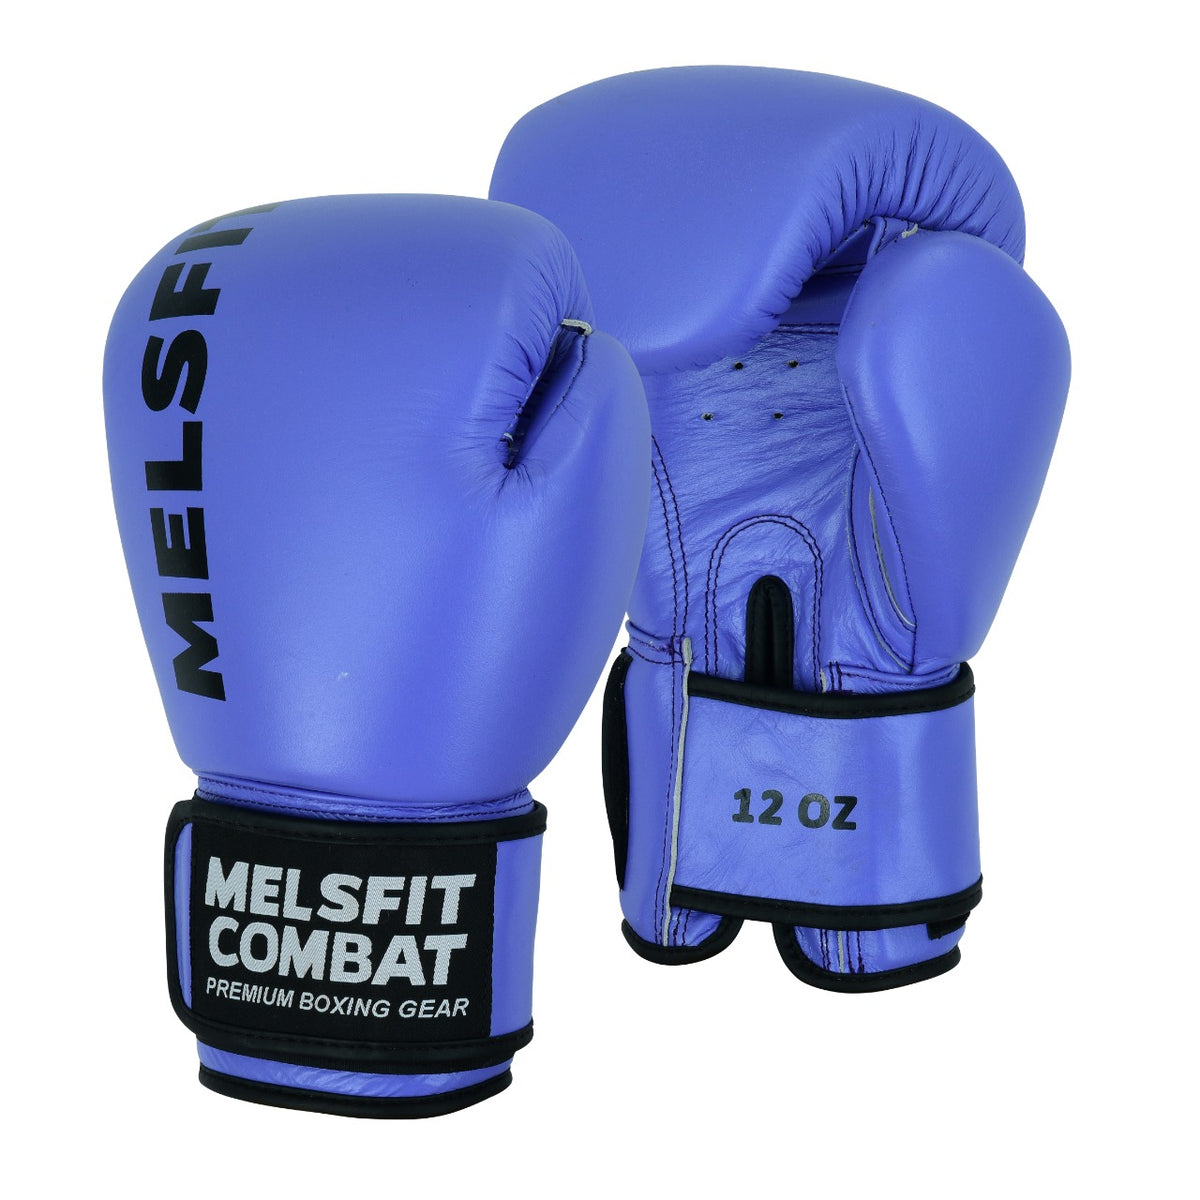 Classic combat gloves